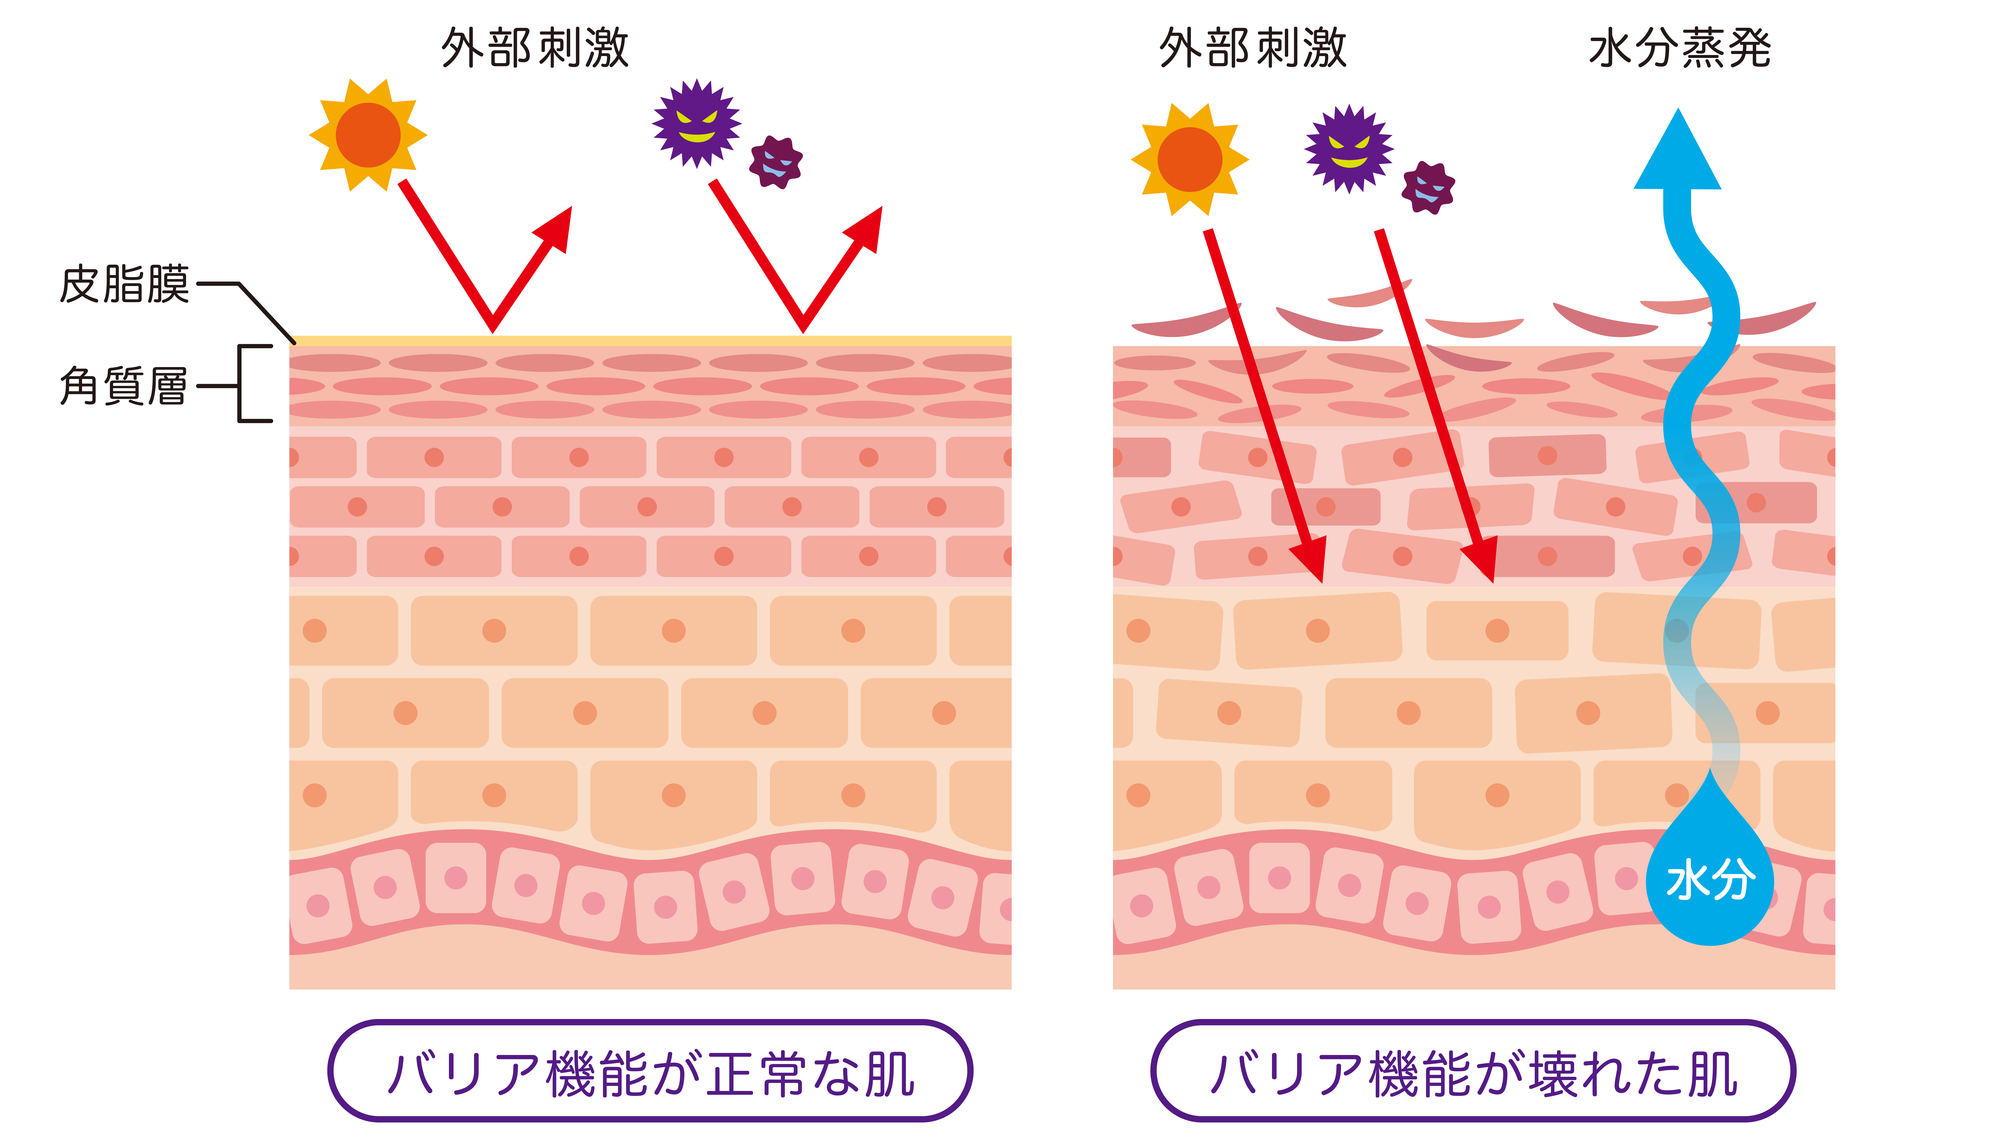 花粉による肌荒れを防ぐには保湿が大切。「バリア機能」を高めるケアを